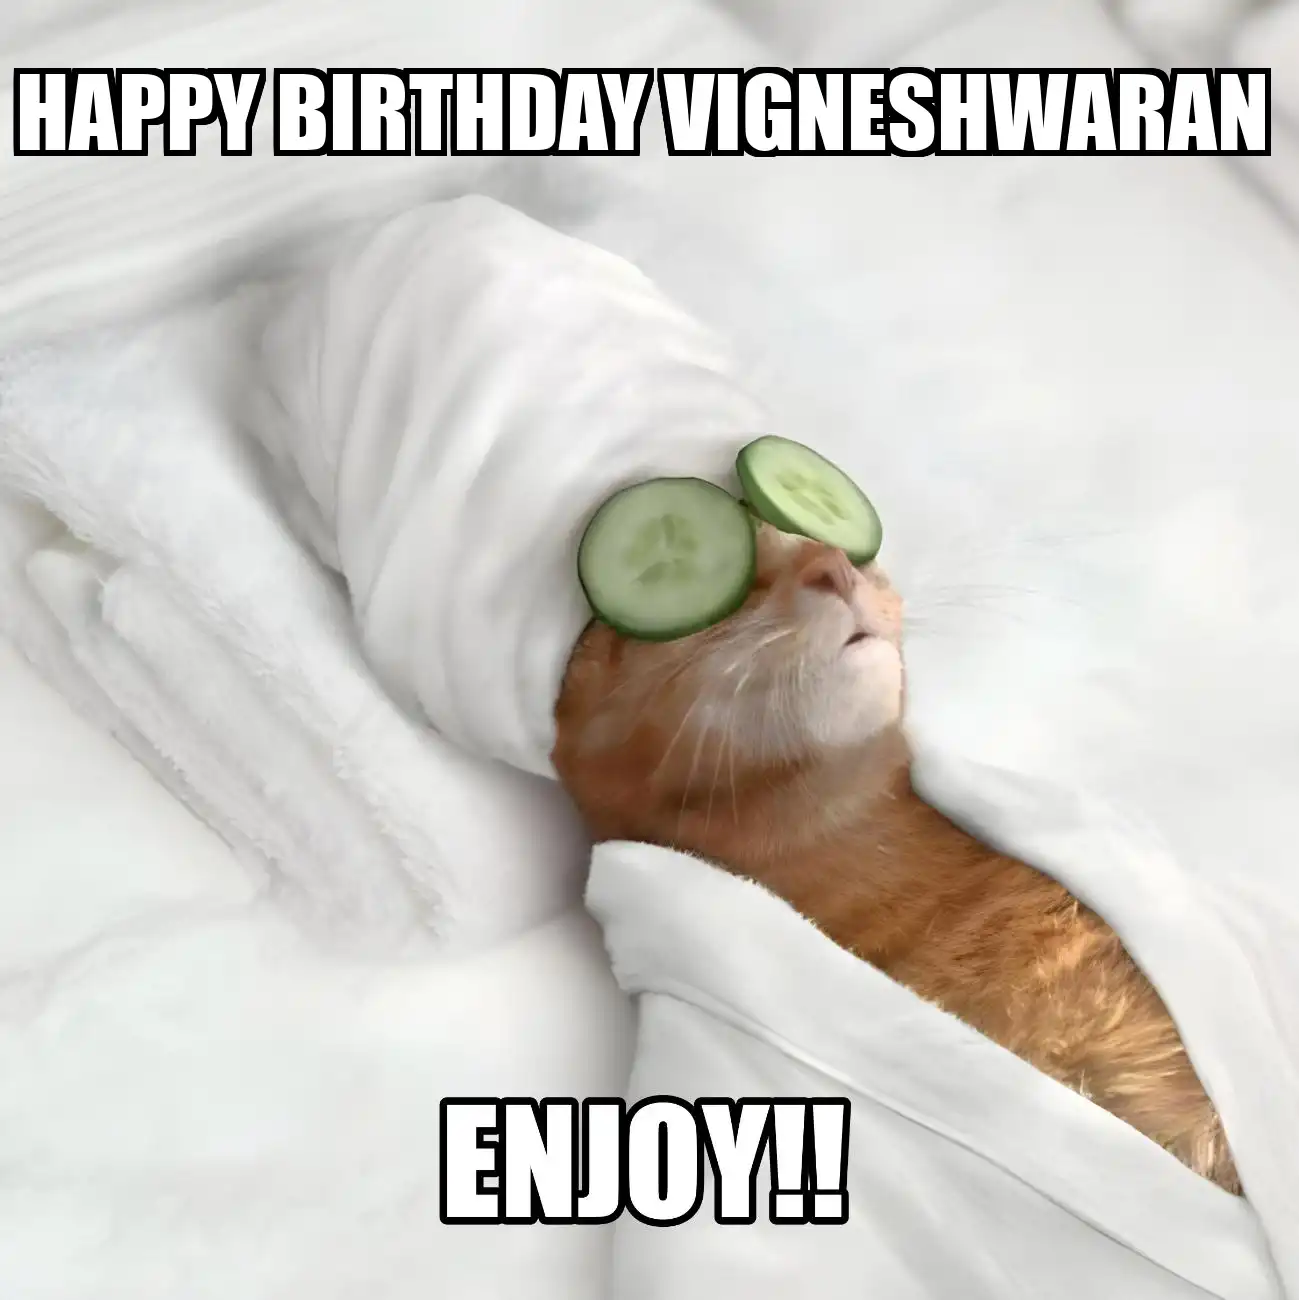 Happy Birthday Vigneshwaran Enjoy Cat Meme